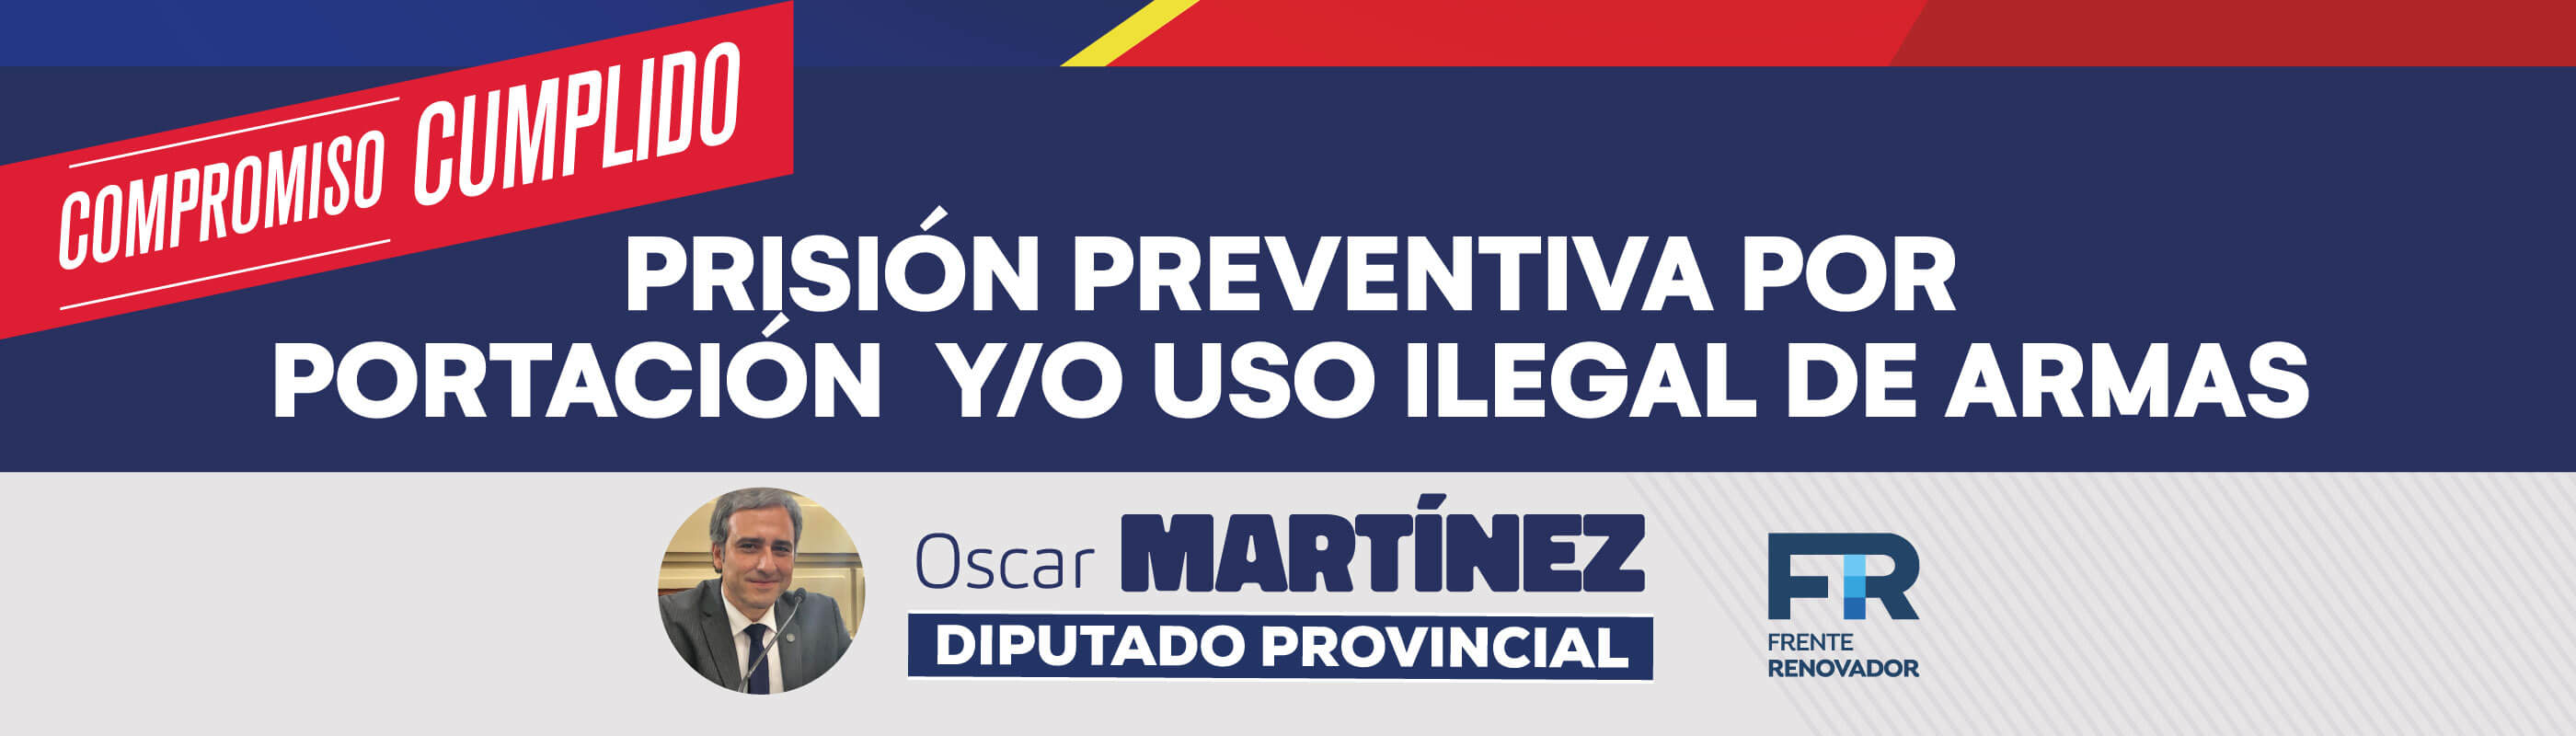 Oscar Martínez - Diputado provincial